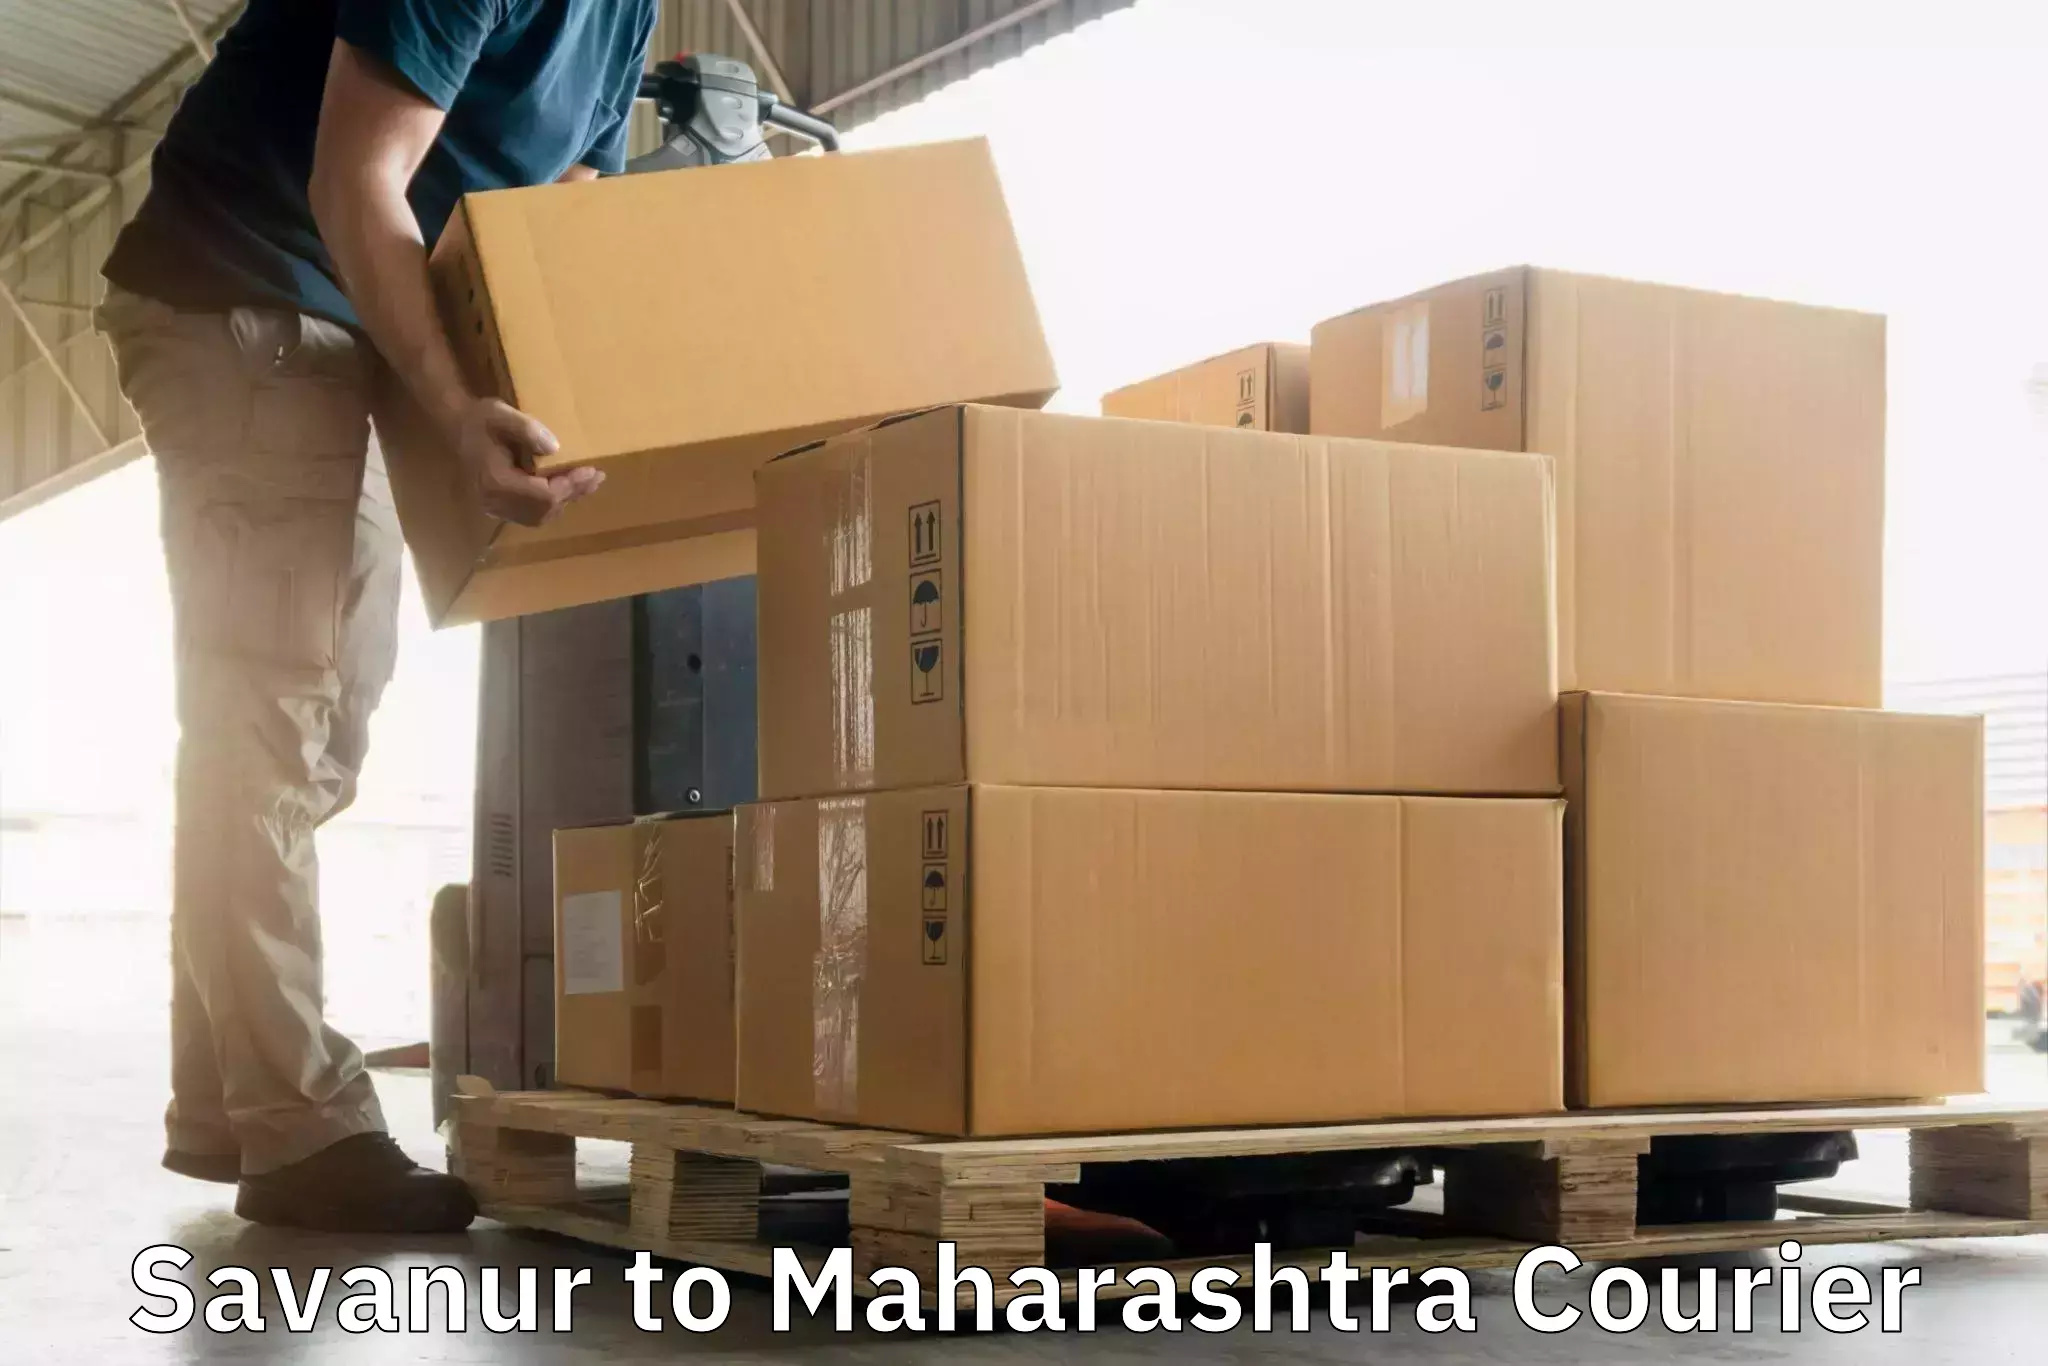 Premium courier solutions Savanur to Sindhudurg